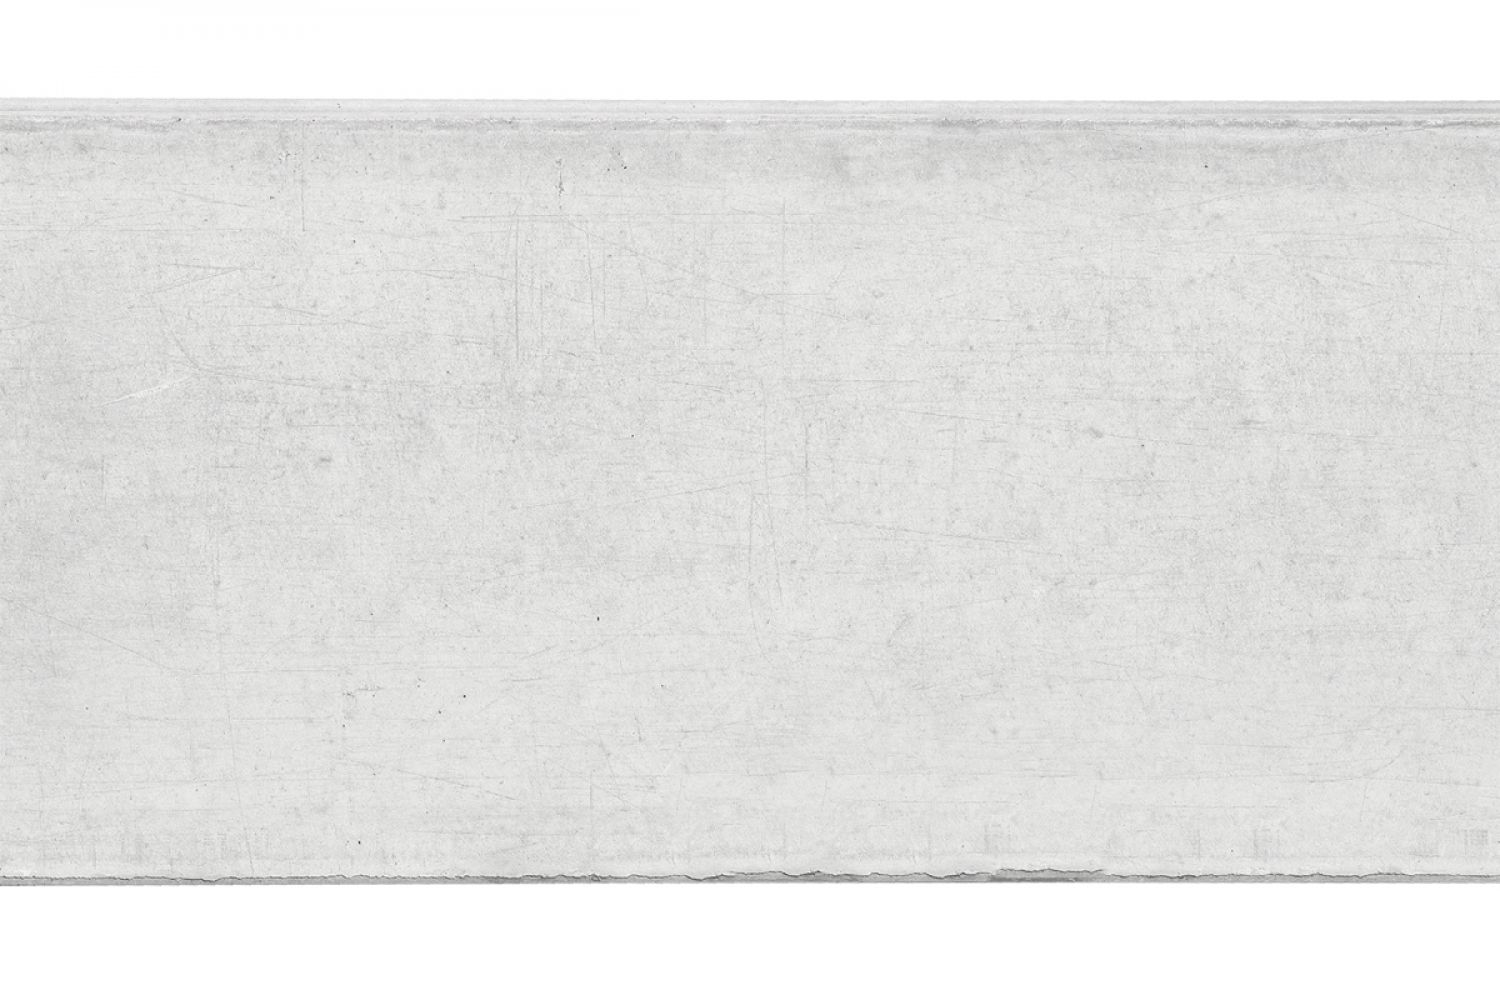 Betonnen onderplaat 3,5x25x180 cm wit/grijs 2-zijdig glad met afwateringsdakje